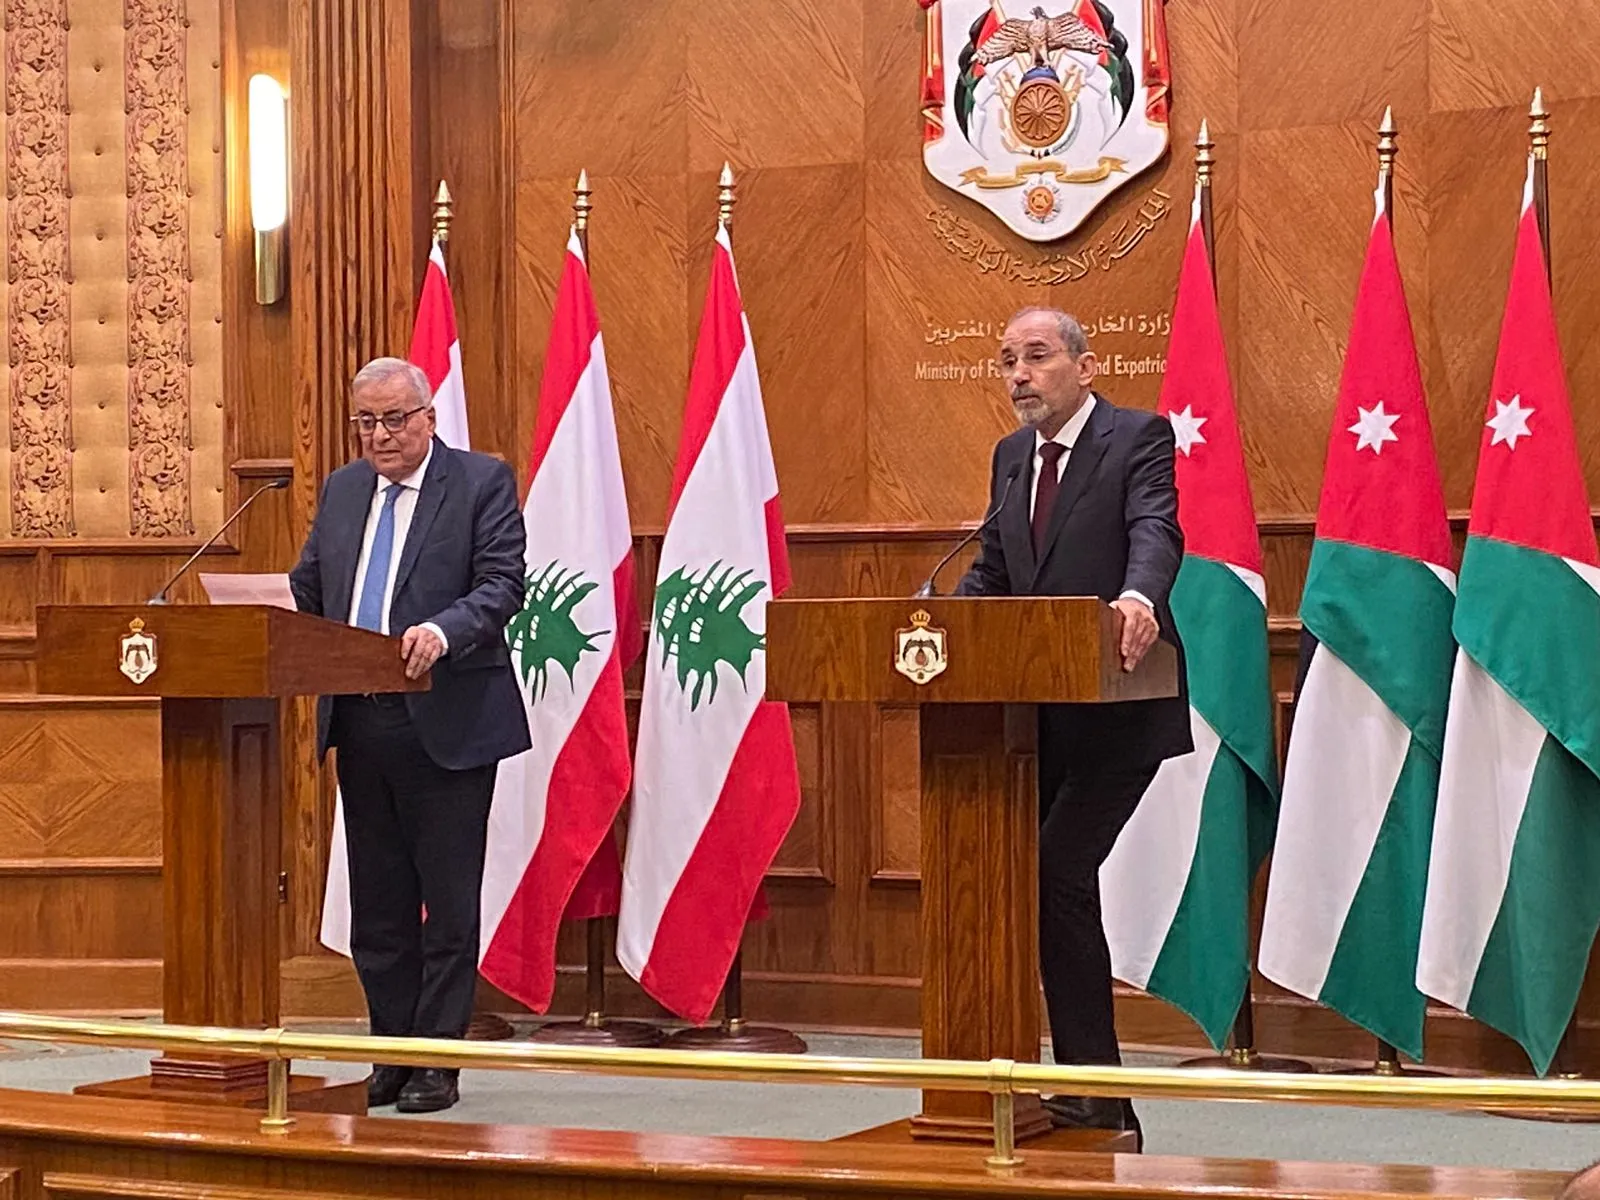 وزير خارجية لبنان يُشيد بـ "المبادرة الأردنية" لحل الأزمة السورية